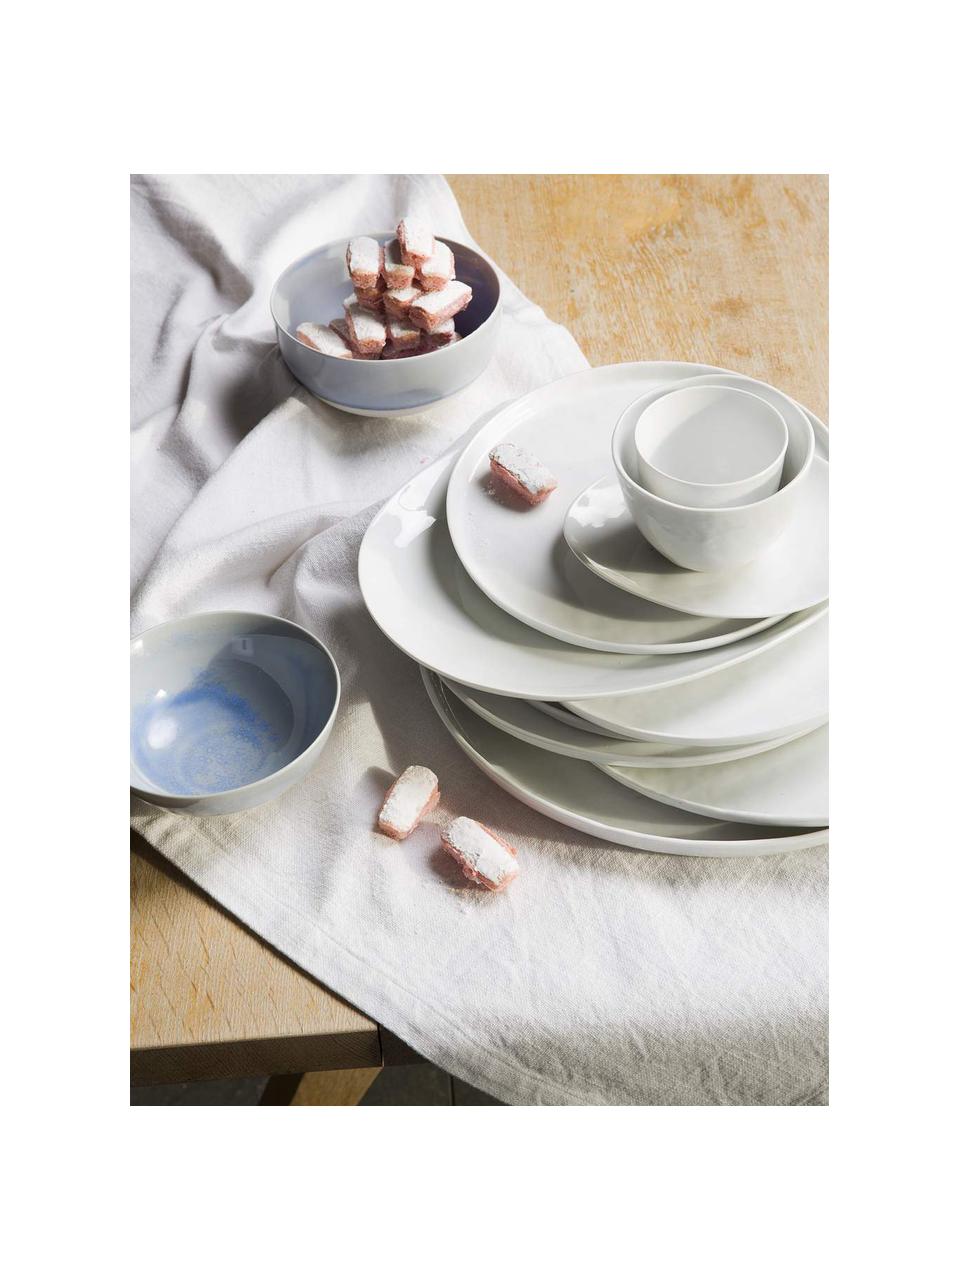 Ovale Speiseteller Porcelino mit unebener Oberfläche, 4 Stück, Porzellan, gewollt ungleichmässig, Weiss, L 28 x B 24 cm